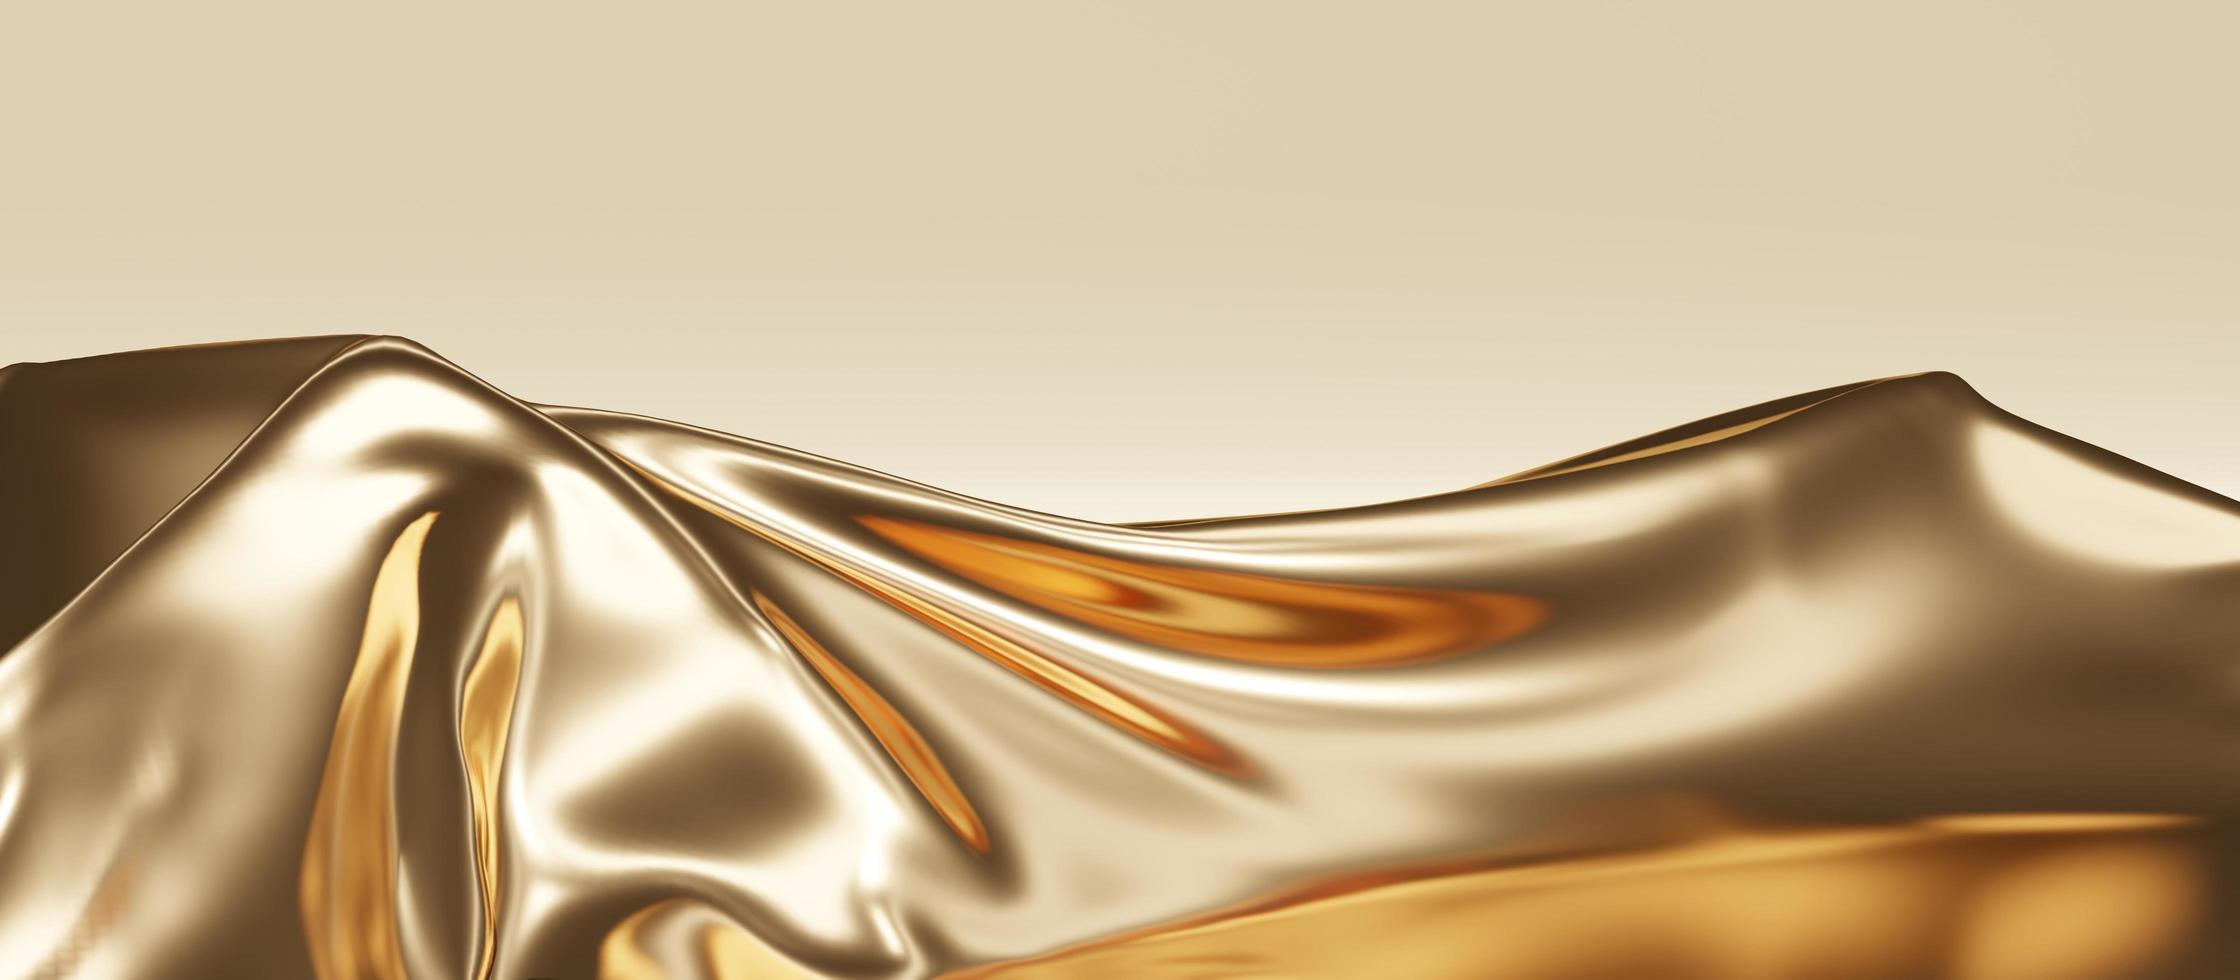 luxus seide golden auf leerem sockel galerie hintergrund regal goldener hintergrund 3d illustration foto